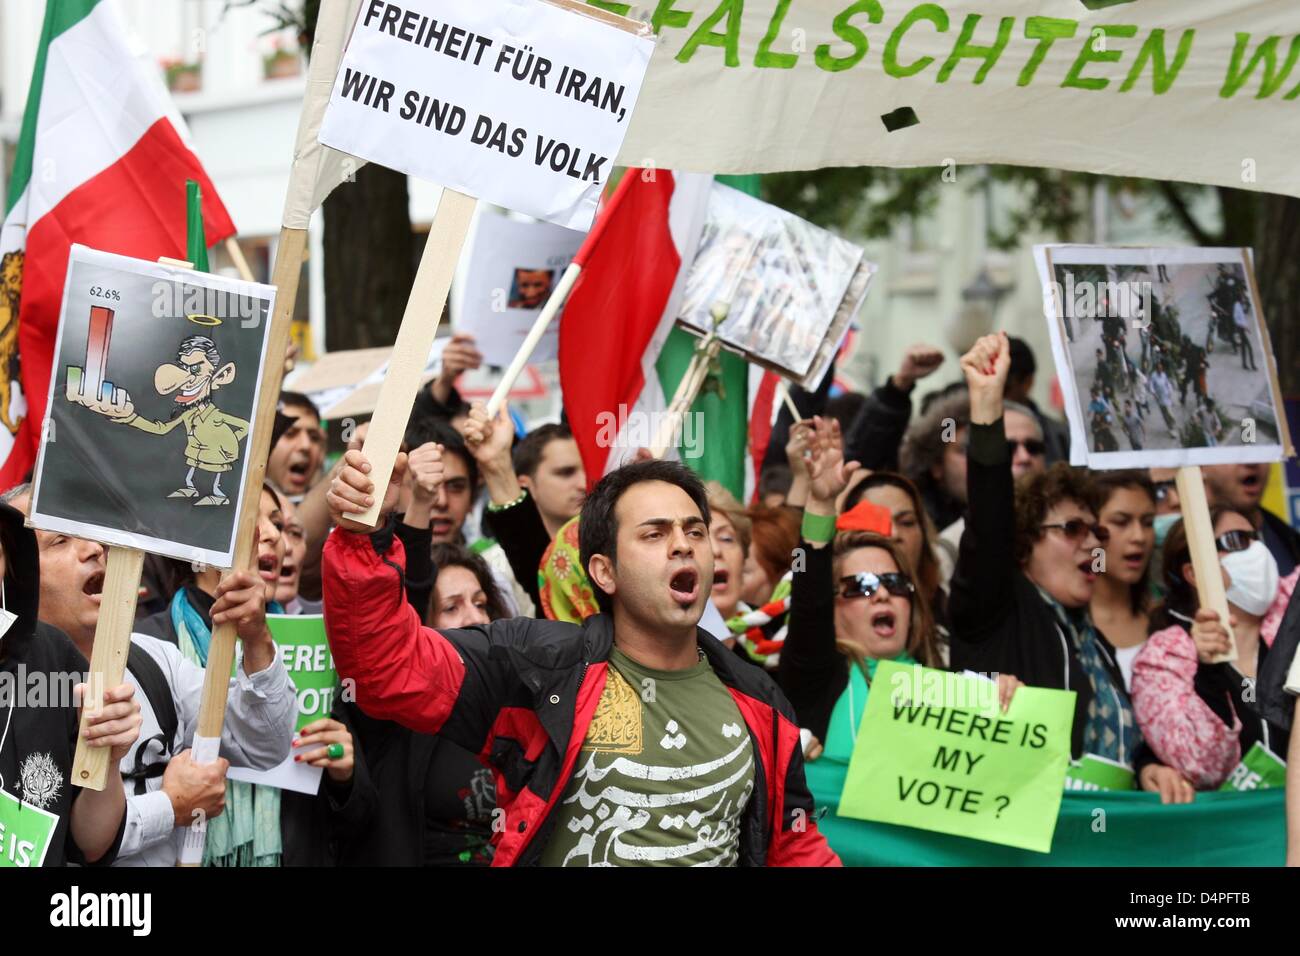 Des manifestants iraniens au cours d'un meeting de protestation contre les résultats de et à l'conseuqences élections présidentielles iraniennes à Hambourg, Allemagne, 20 juin 2009. Selon les chiffres de la police de quelque 3 000 personnes ont participé au rassemblement. Photo : MALTE CHRÉTIENS Banque D'Images